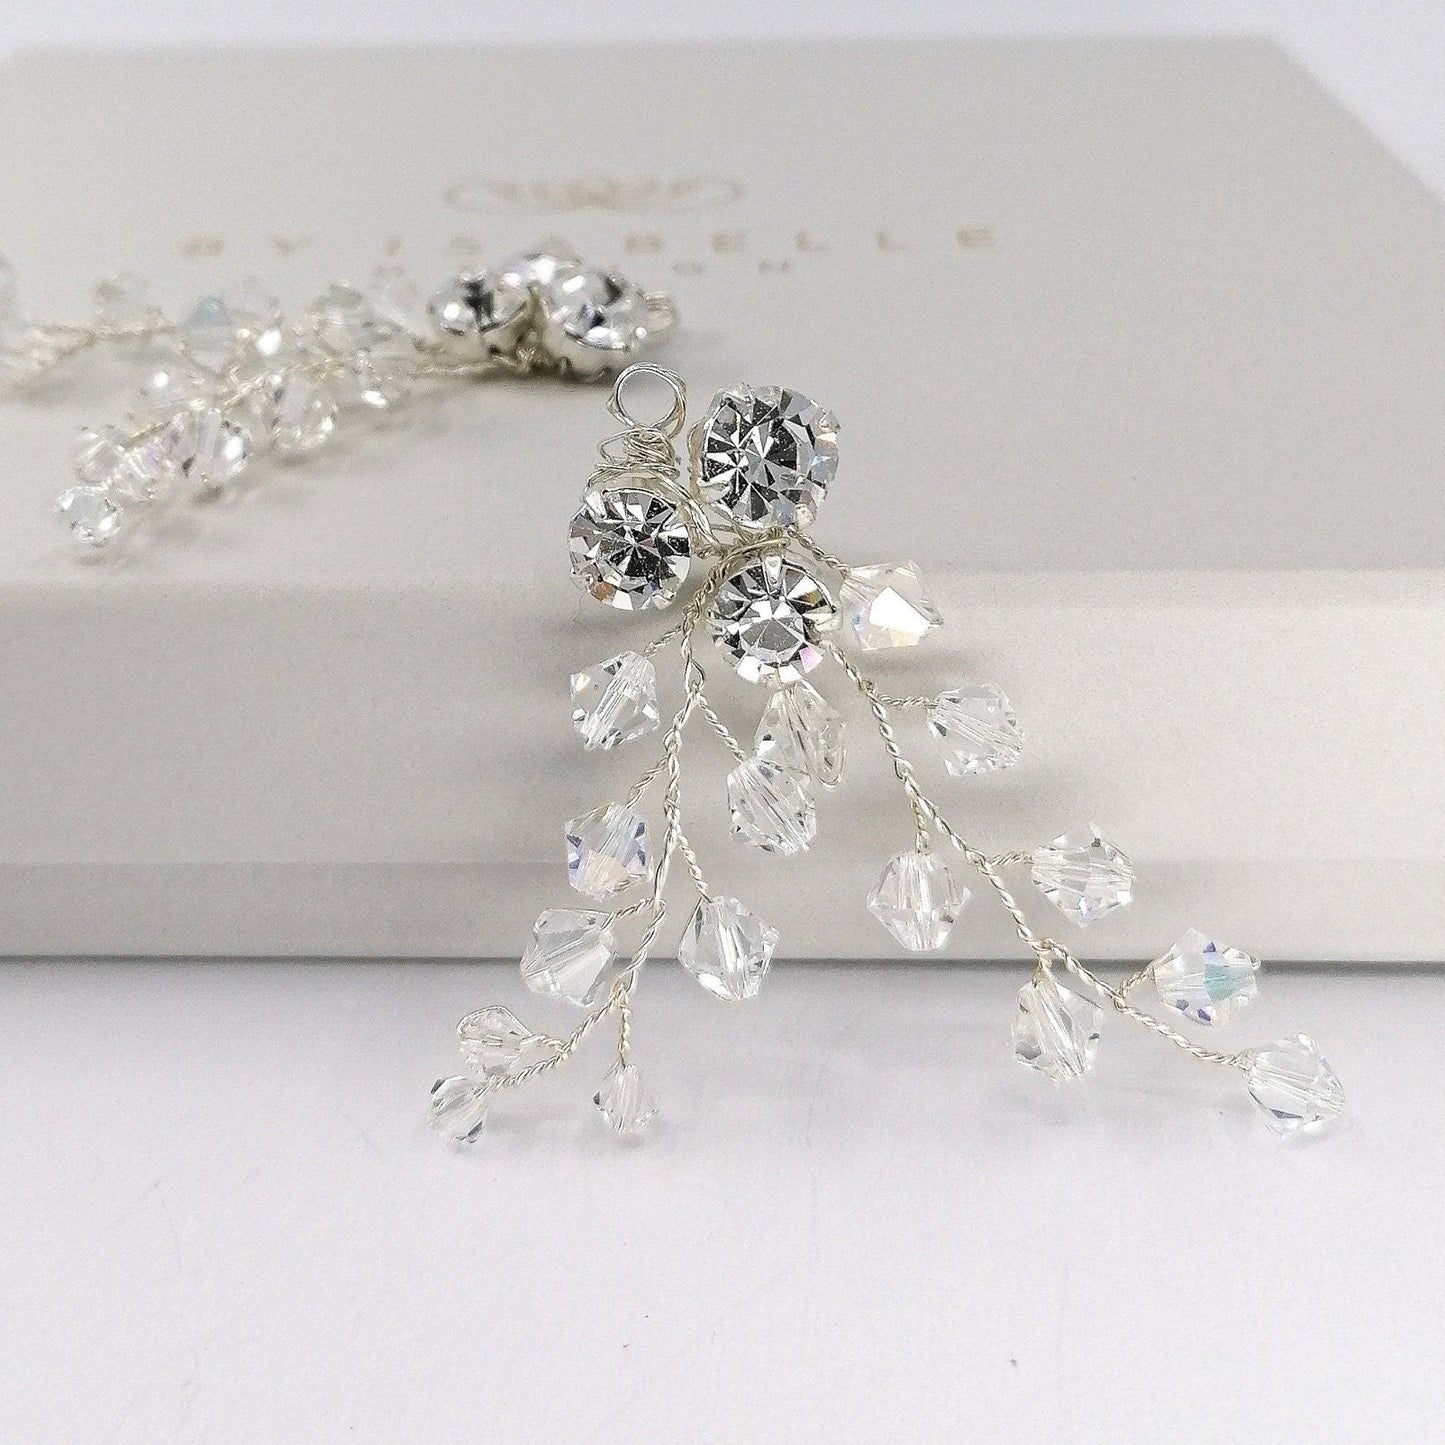 Holly twig crystal ornaments